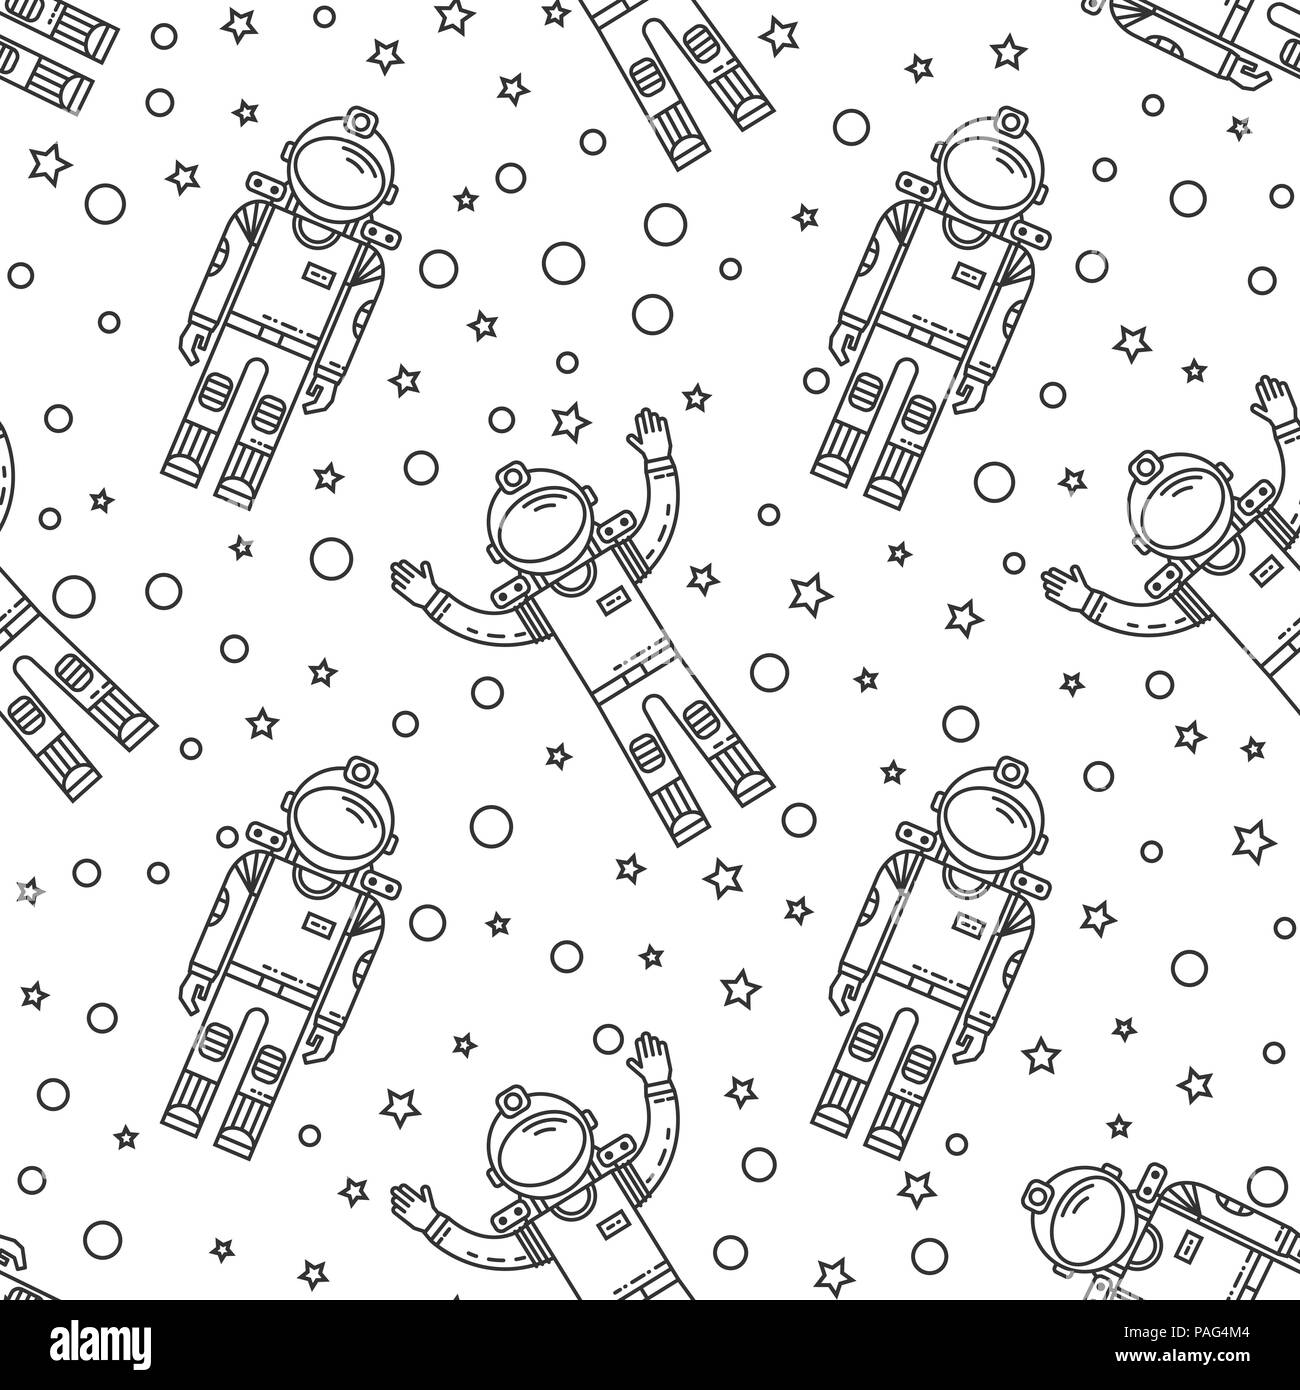 Espacio patrón sin fisuras de Memphis. Moda 80-90 s. Texturas de mosaicos en blanco y negro. Ilustración vectorial. Misión humana a Marte. Icono de línea delgada. Ilustración del Vector